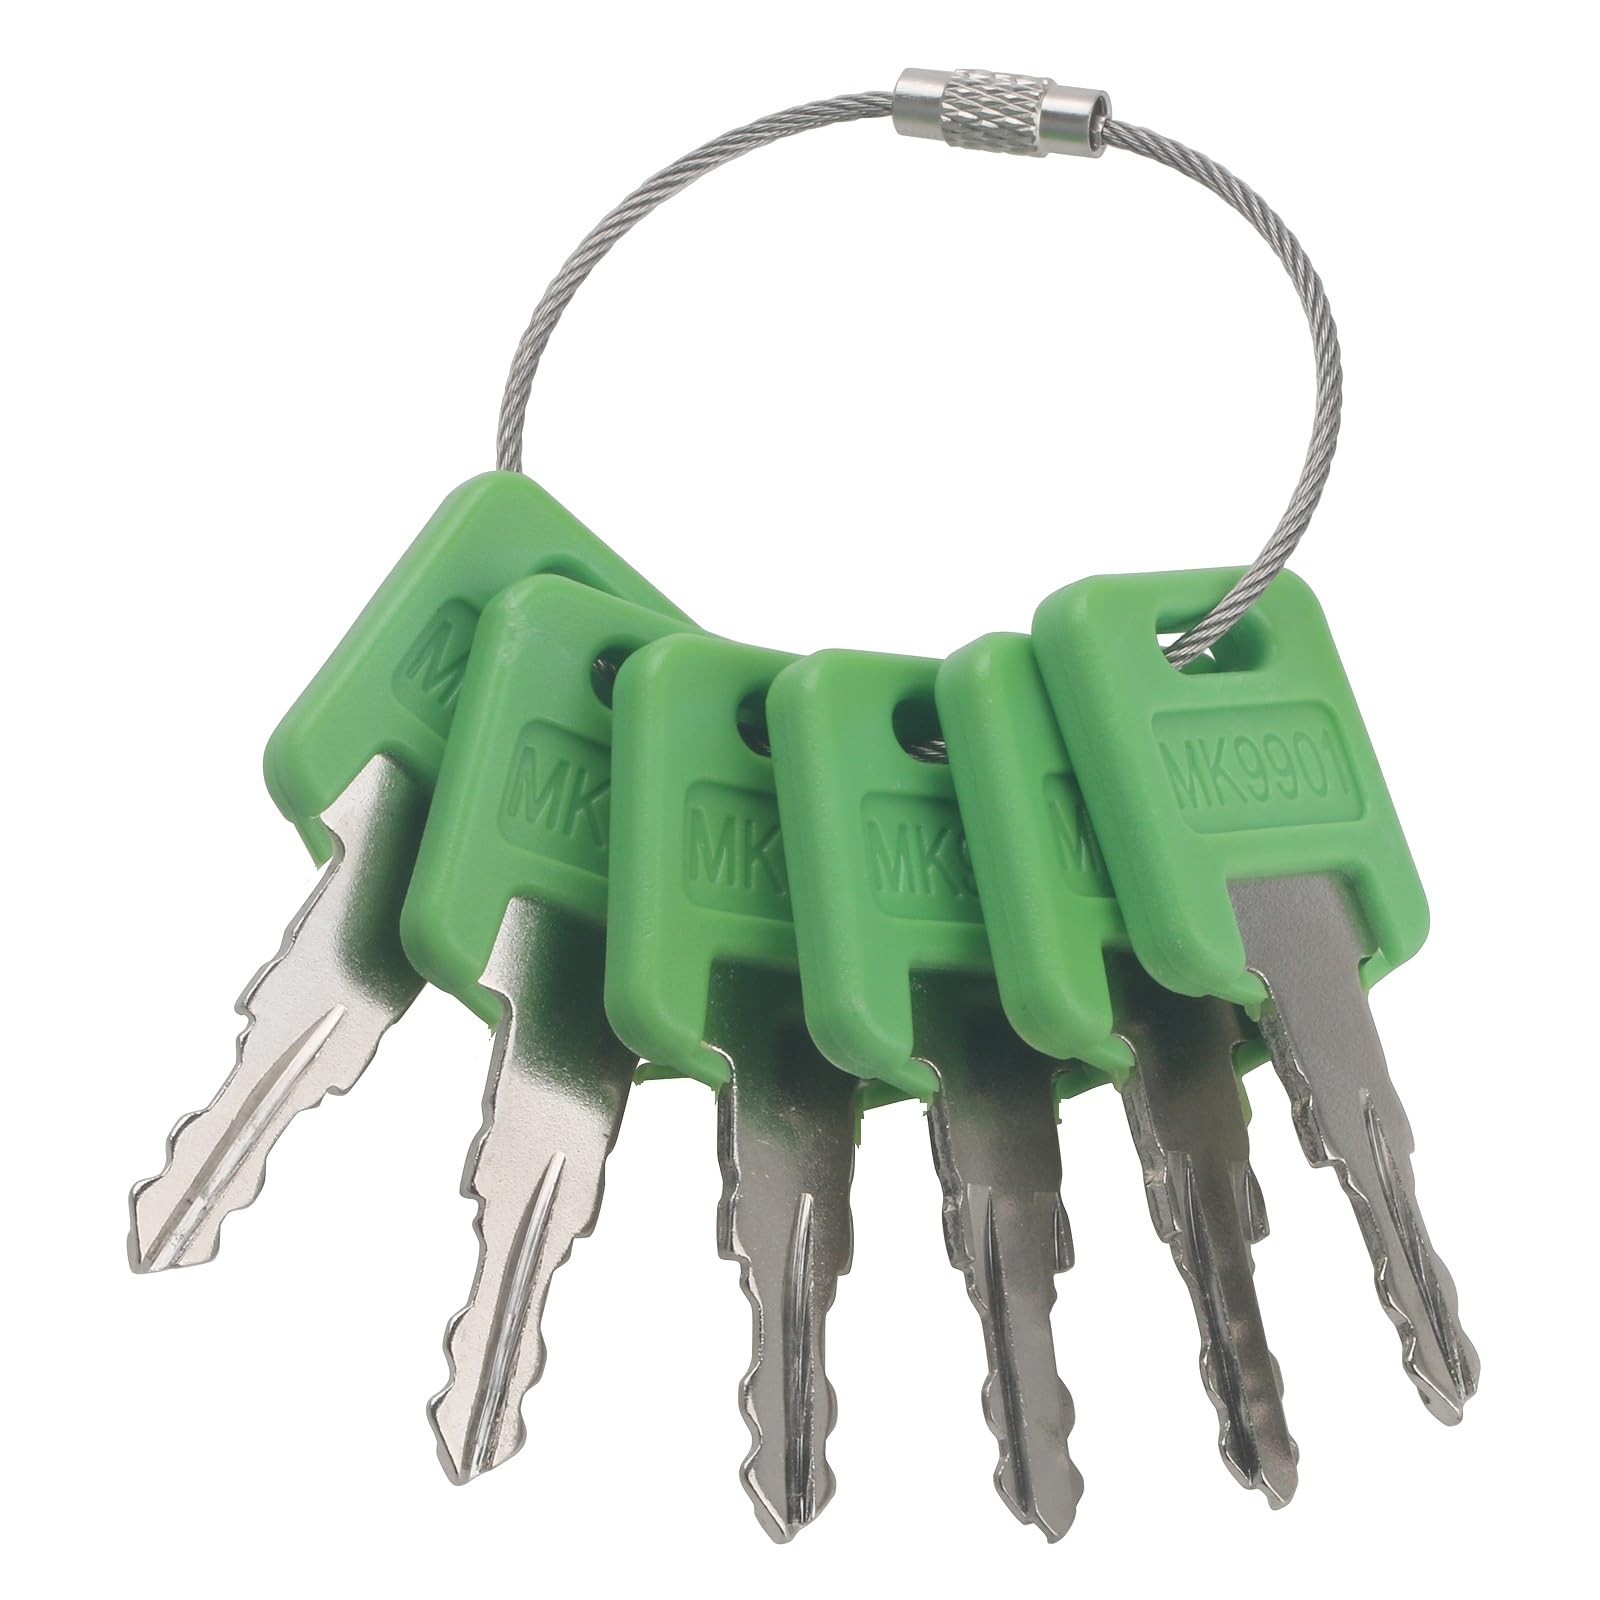 GAOHOU 6 Stück Wohnmobil-Zündschlüssel MK9901 Wohnmobil 6601 Schlüssel Kompatibel mit FIC Codes CW401 bis CW450 9901 6601 M CF301 bis CF350 EF301 bis EF350 HF301 bis HF350 Camper Schlösser von GAOHOU